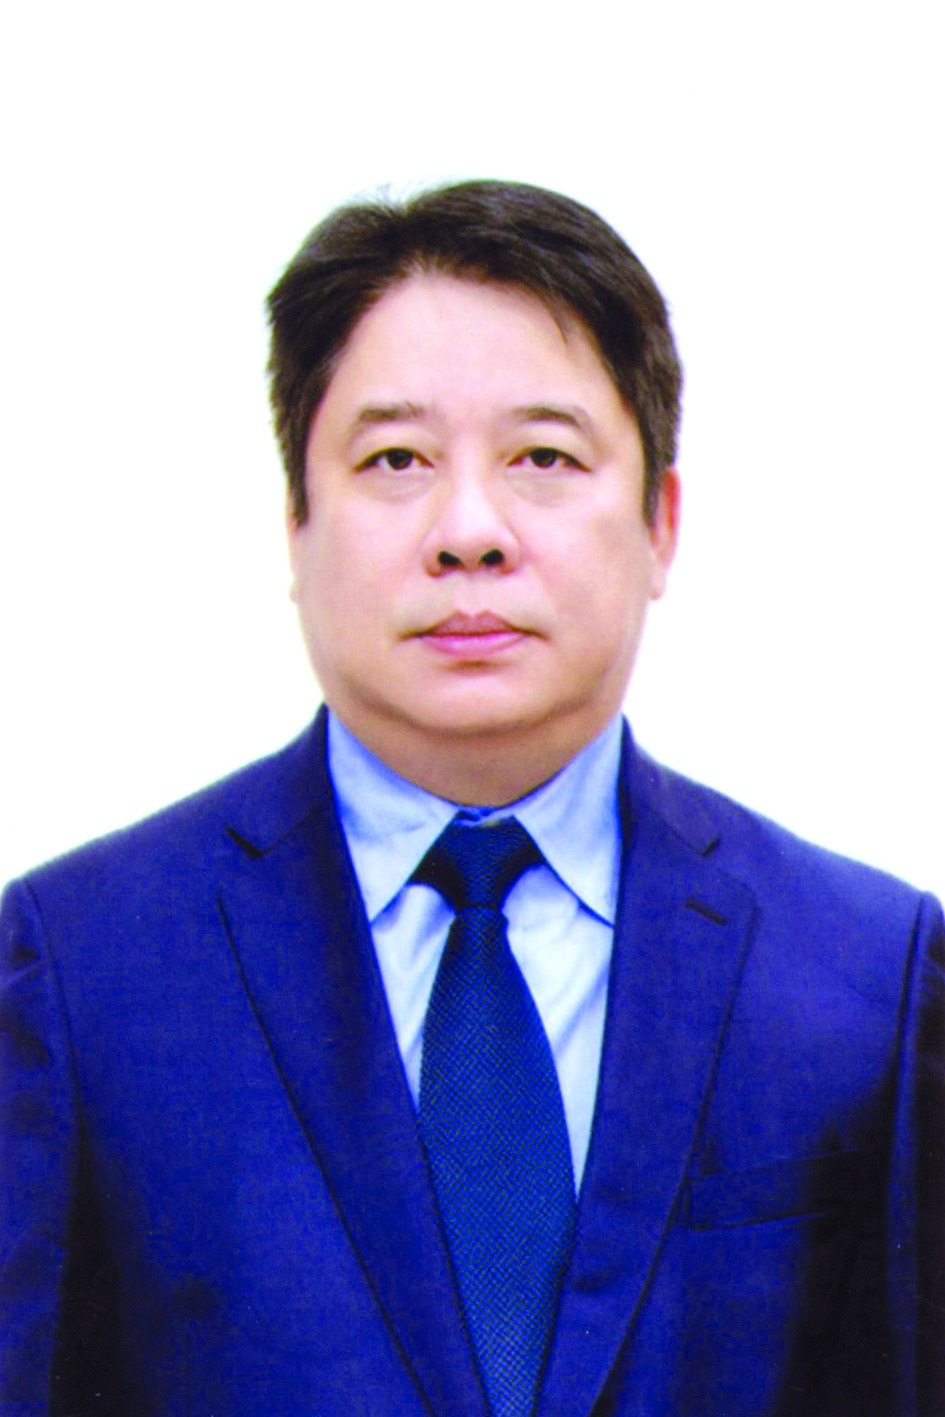 Chương trình hành động của Chủ tịch HĐTV Tổng công ty Điện lực TP Hà Nội Nguyễn Anh Tuấn, ứng cử viên đại biểu HĐND TP Hà Nội nhiệm kỳ 2021 - 2026 - Ảnh 1